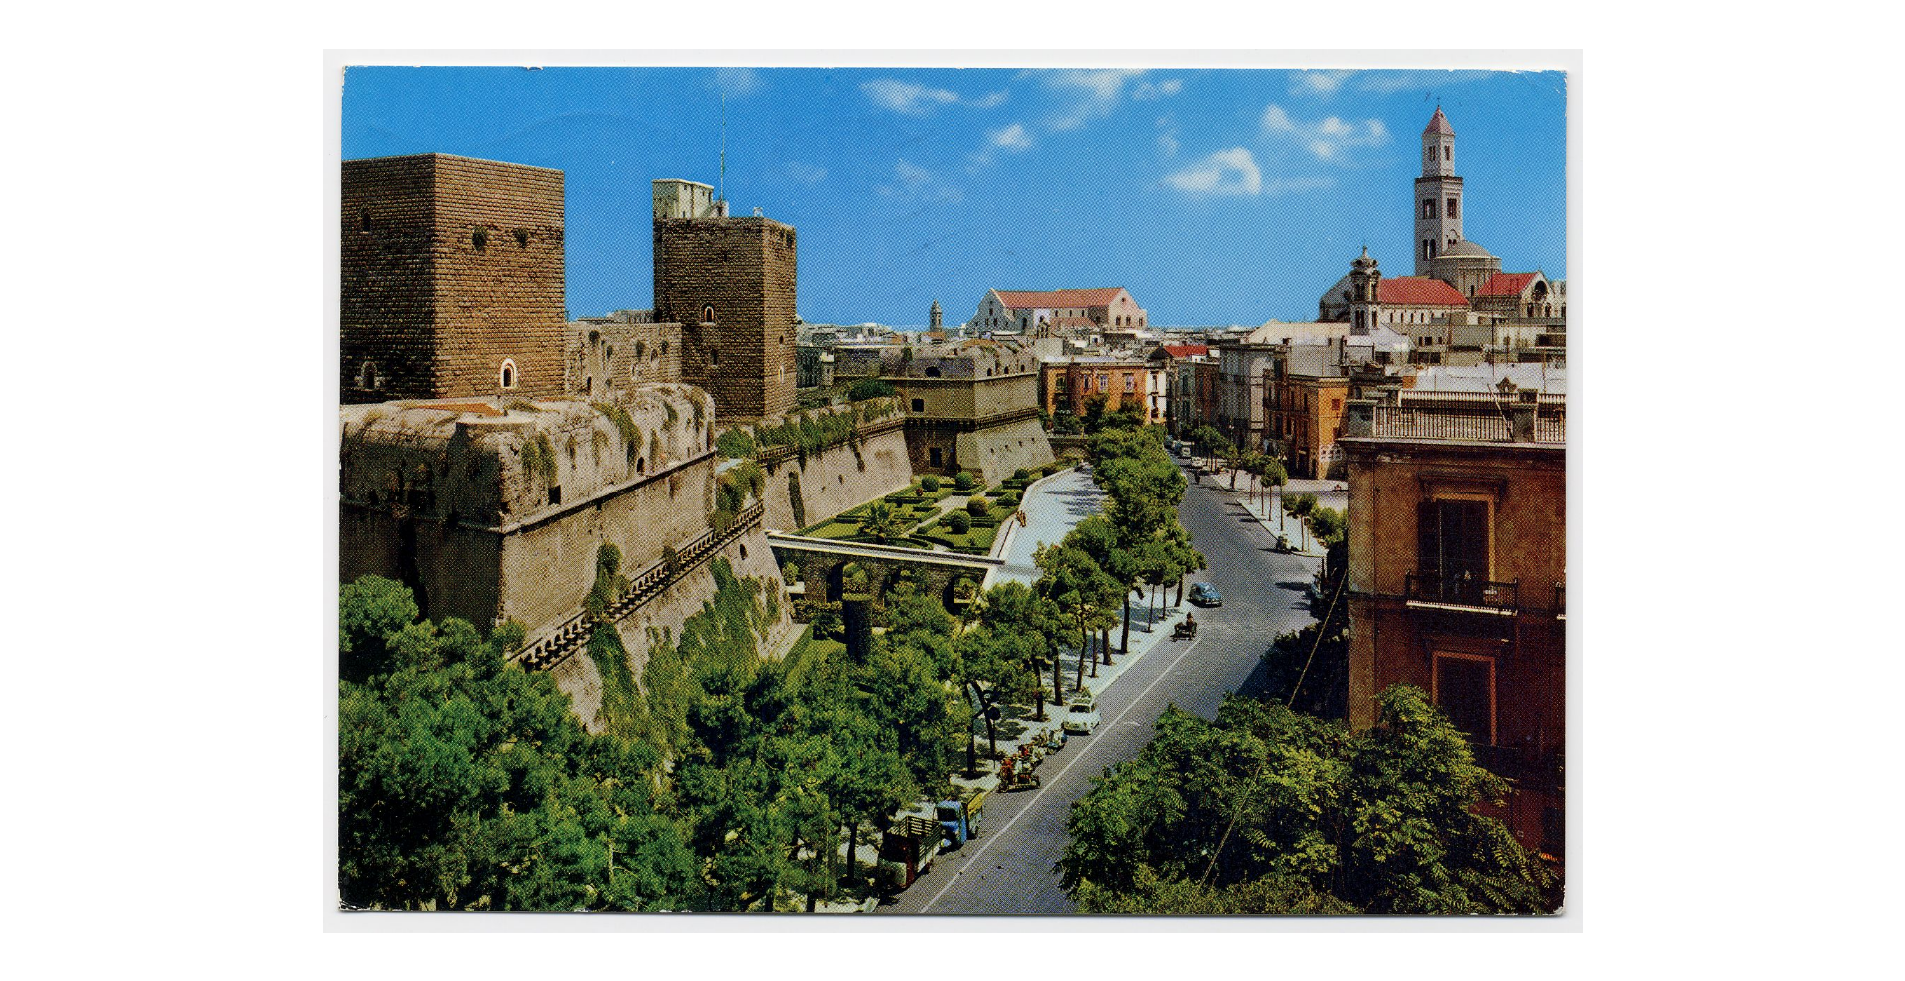 Fotografo non identificato, Bari - Castello Svevo, 1966, cartolina, FFC017483